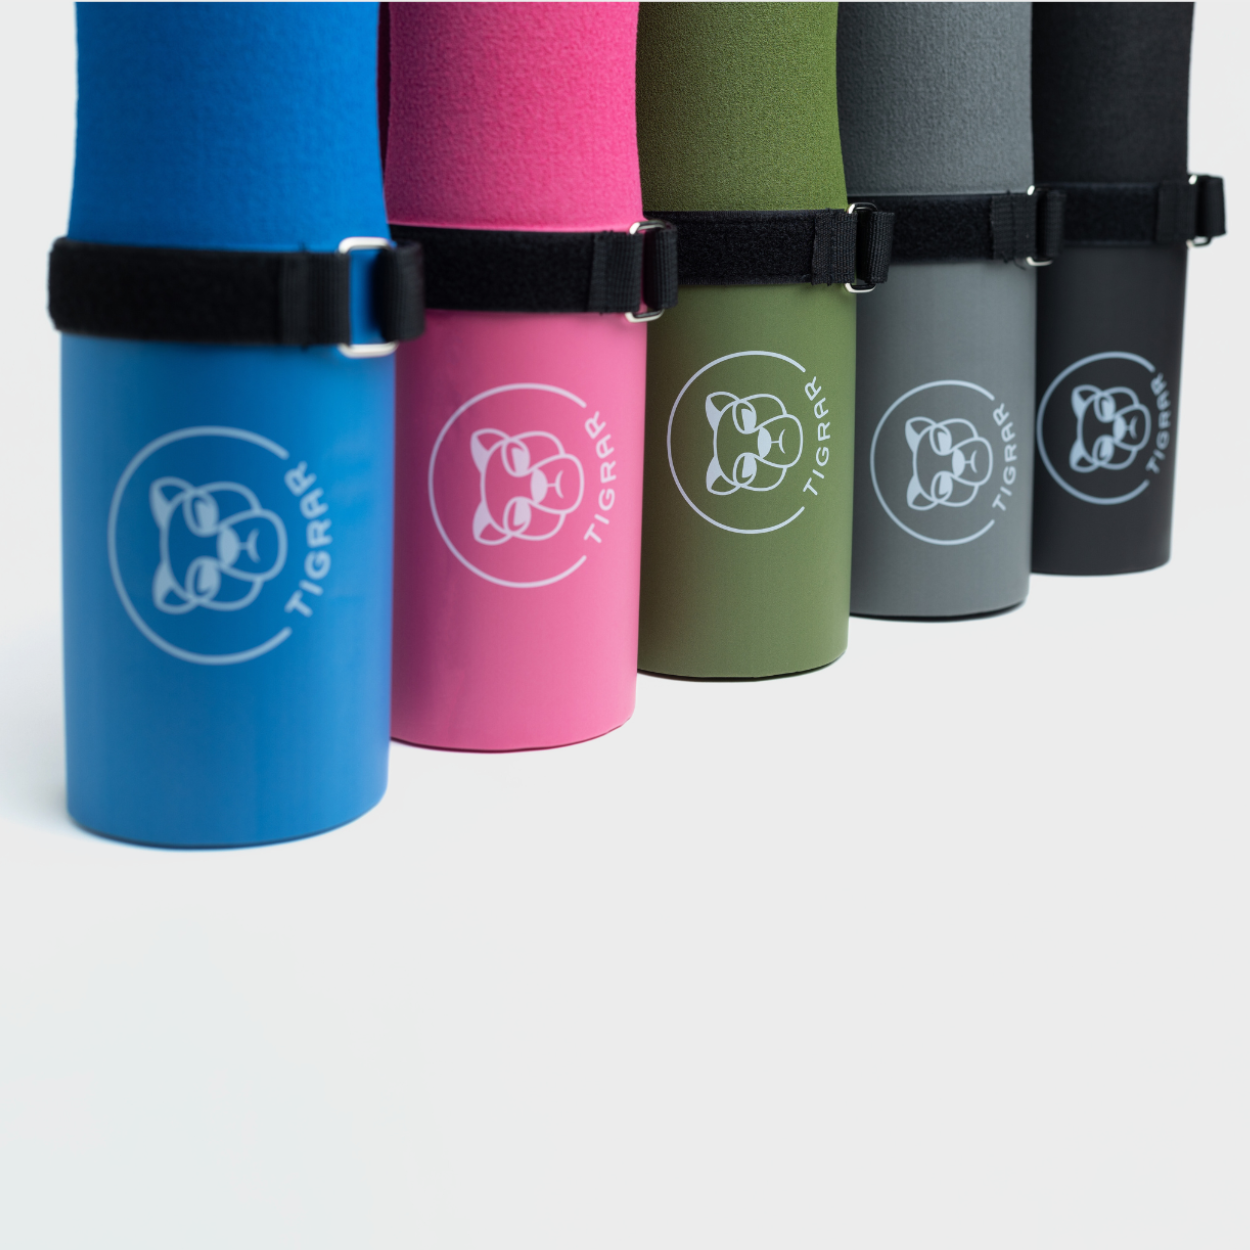 Vijf verschillende kleuren Tigrar barbell pads uitgestald, elk ontworpen voor comfortabele gewichtheftraining.